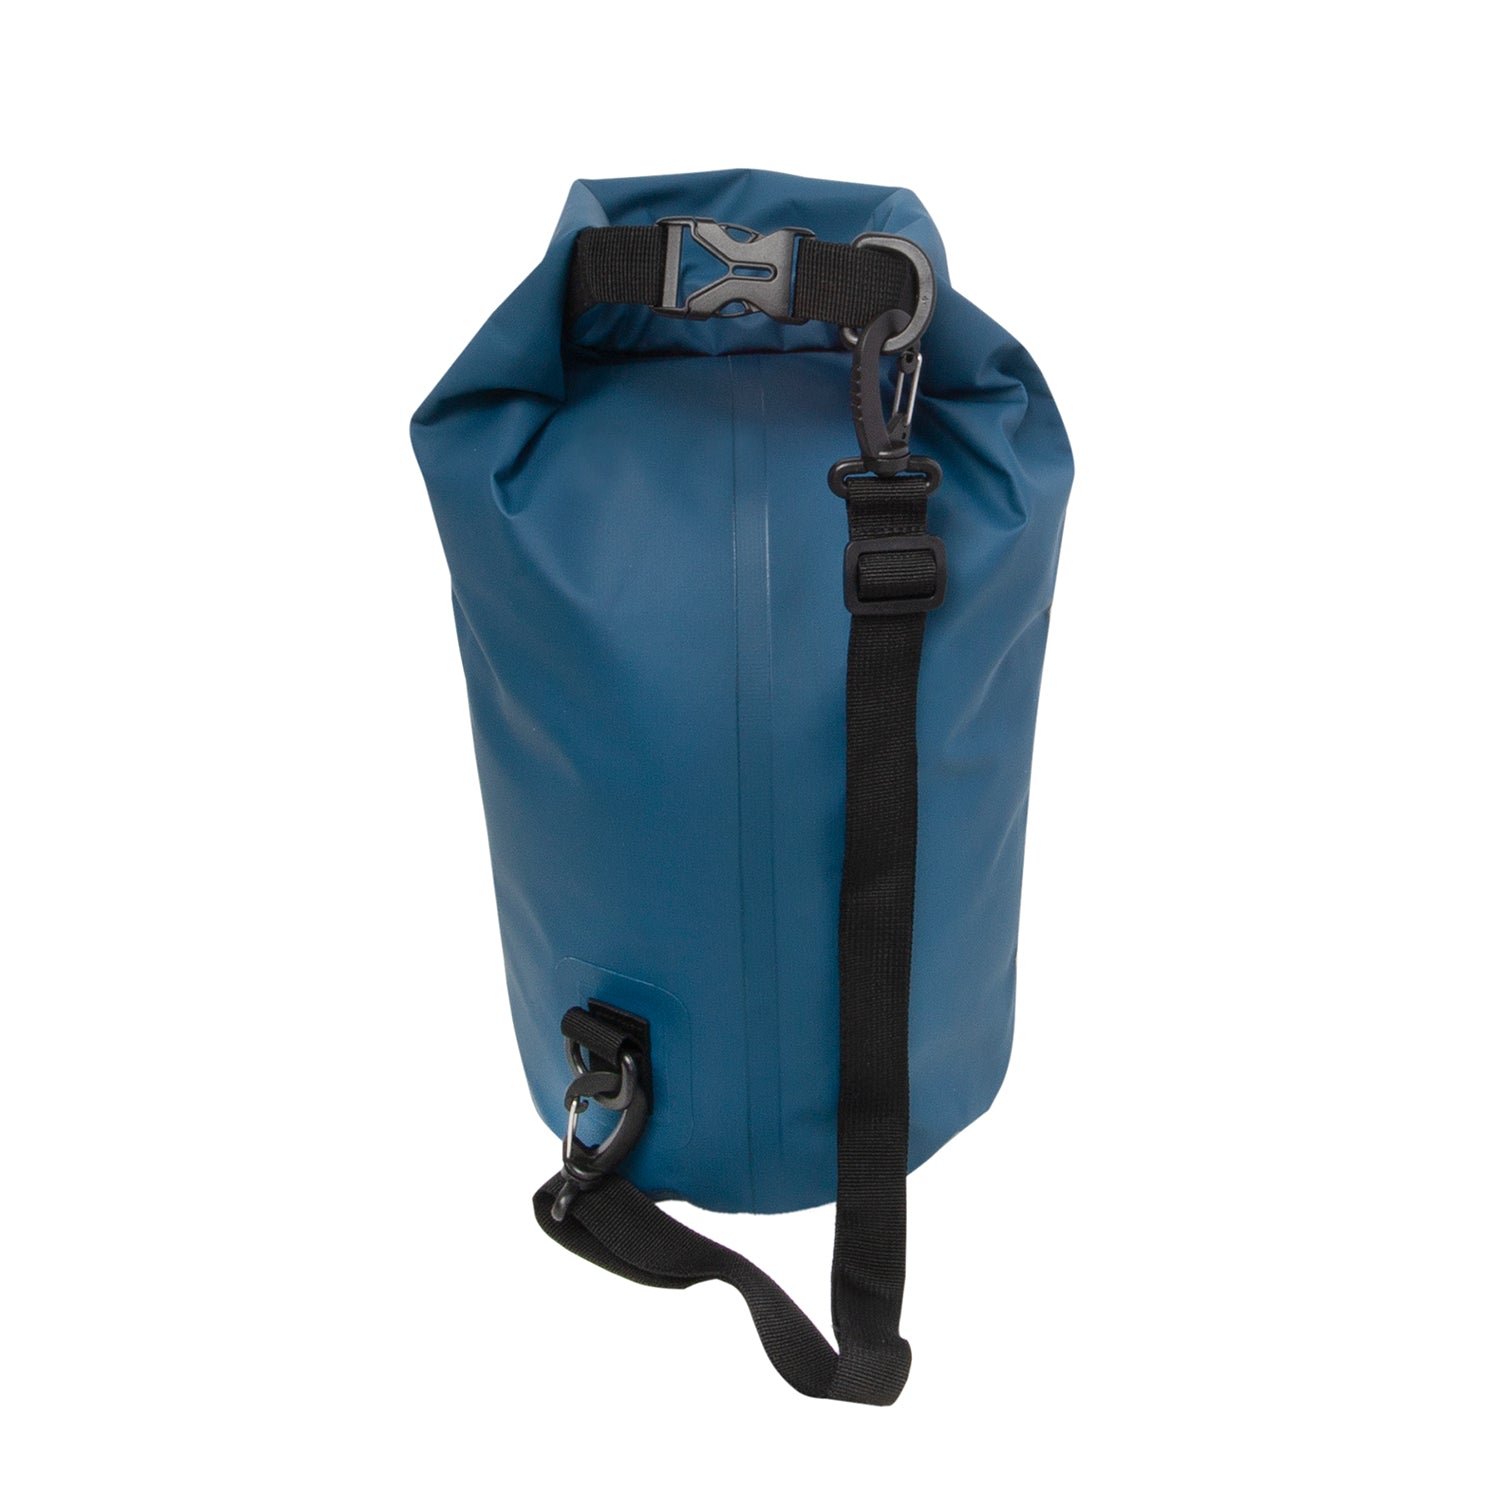 Calcutta dry bag 5L blue back